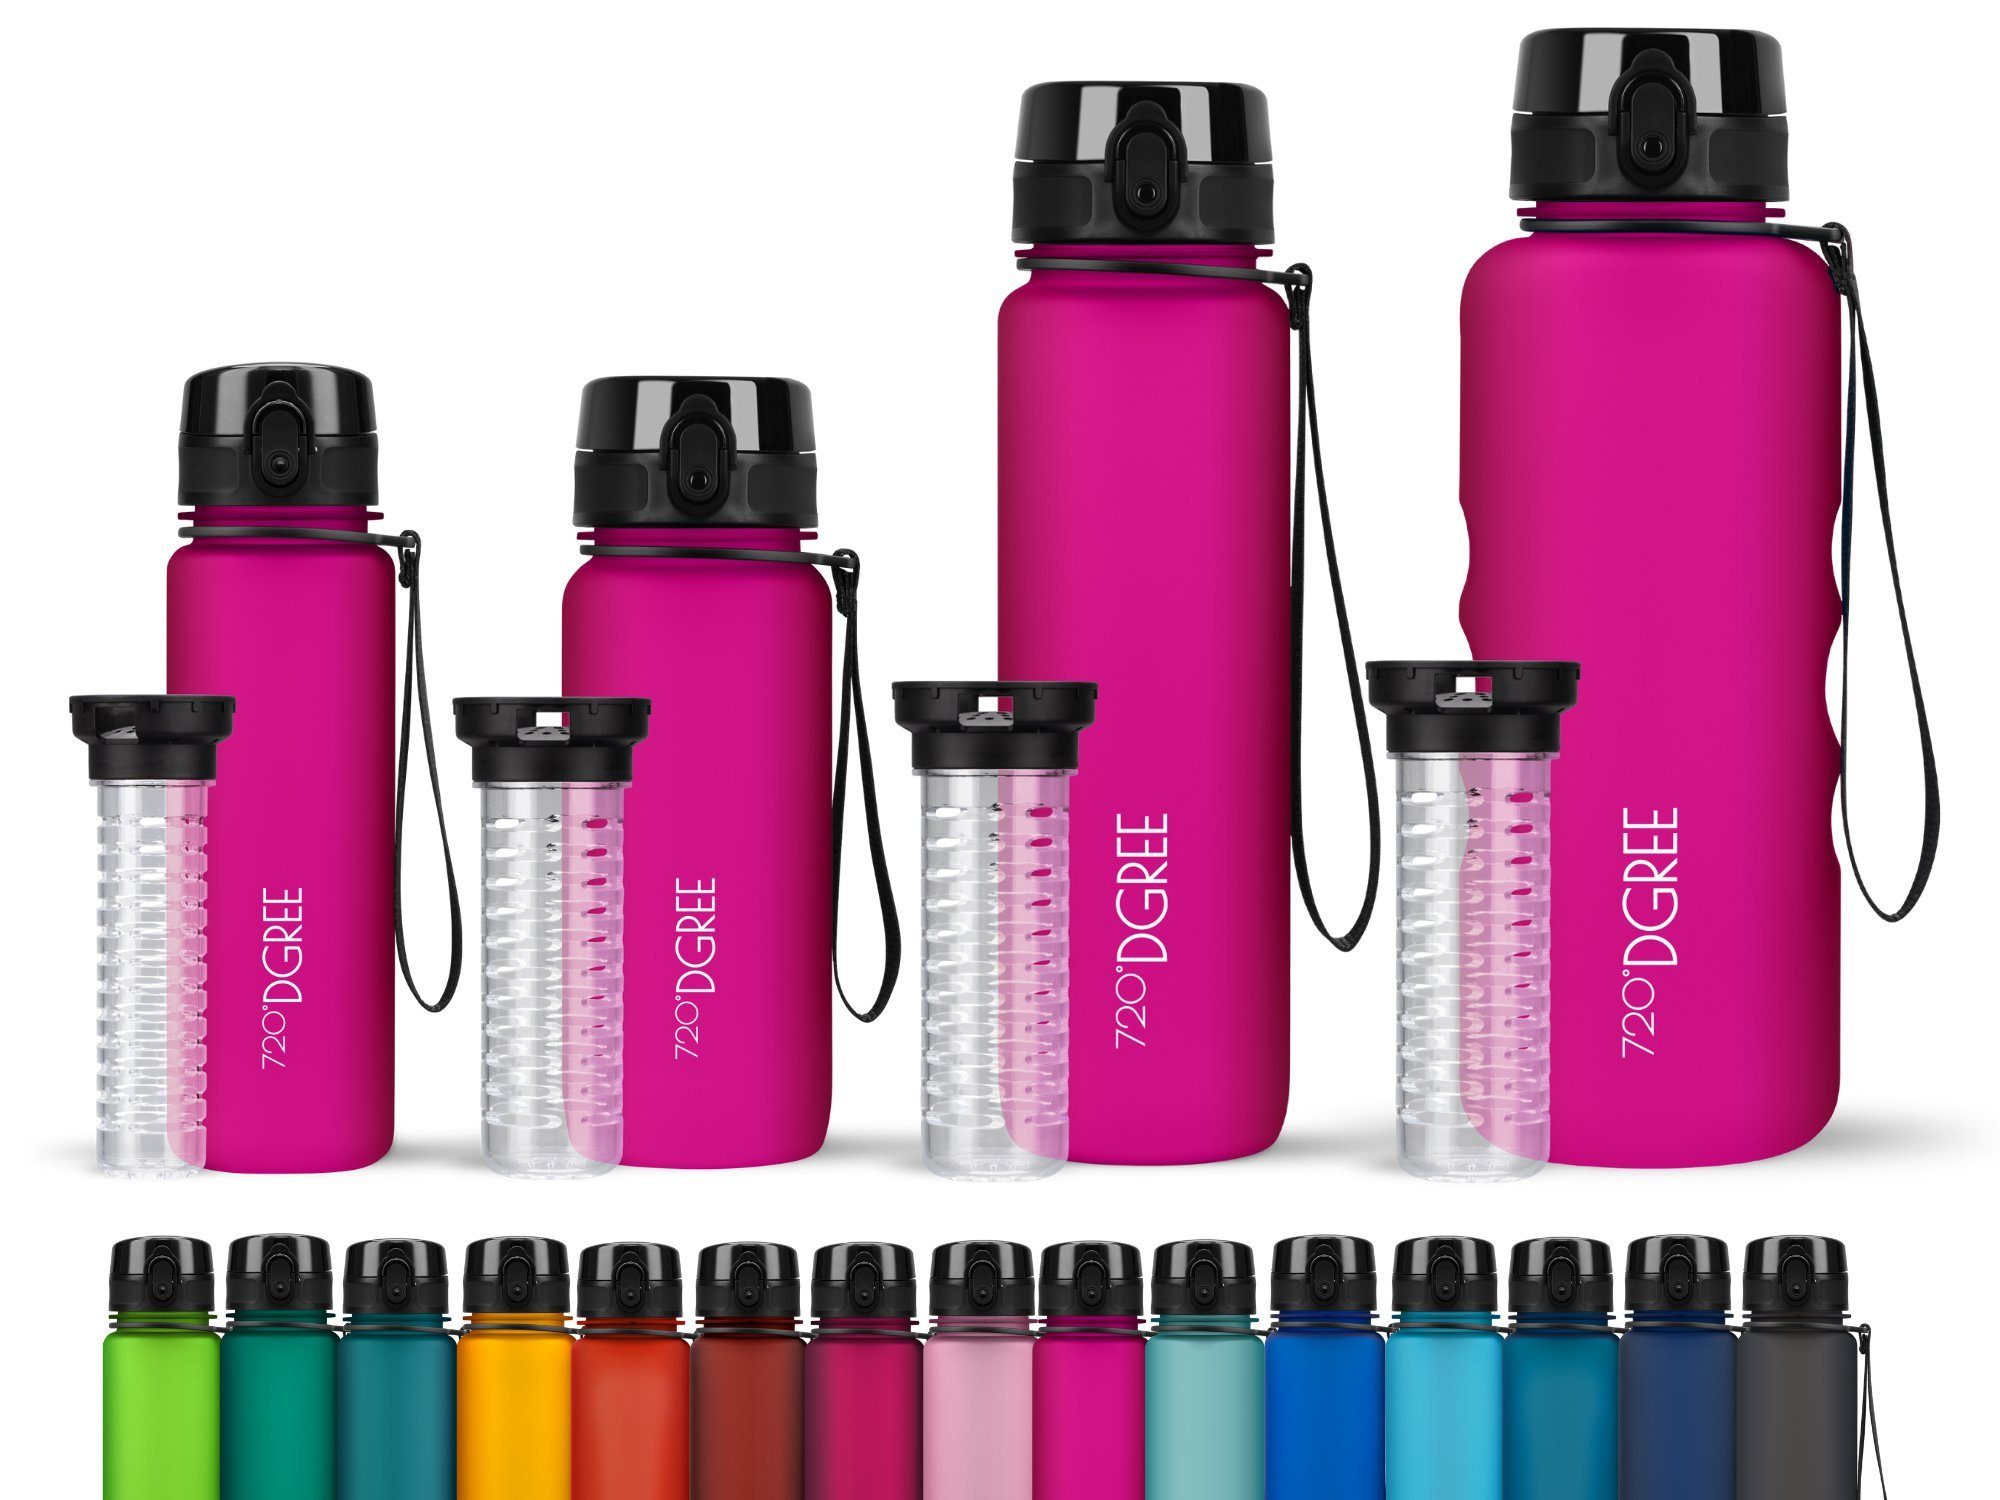 Wasserflasche 1,5 l fuchsia Schule, Sport uberBottle Früchtebehälter, Fahrrad Outdoor, und 500ml,650ml,1 auslaufsicher liter, 720°DGREE mit Trinkflasche Sportflasche pink für